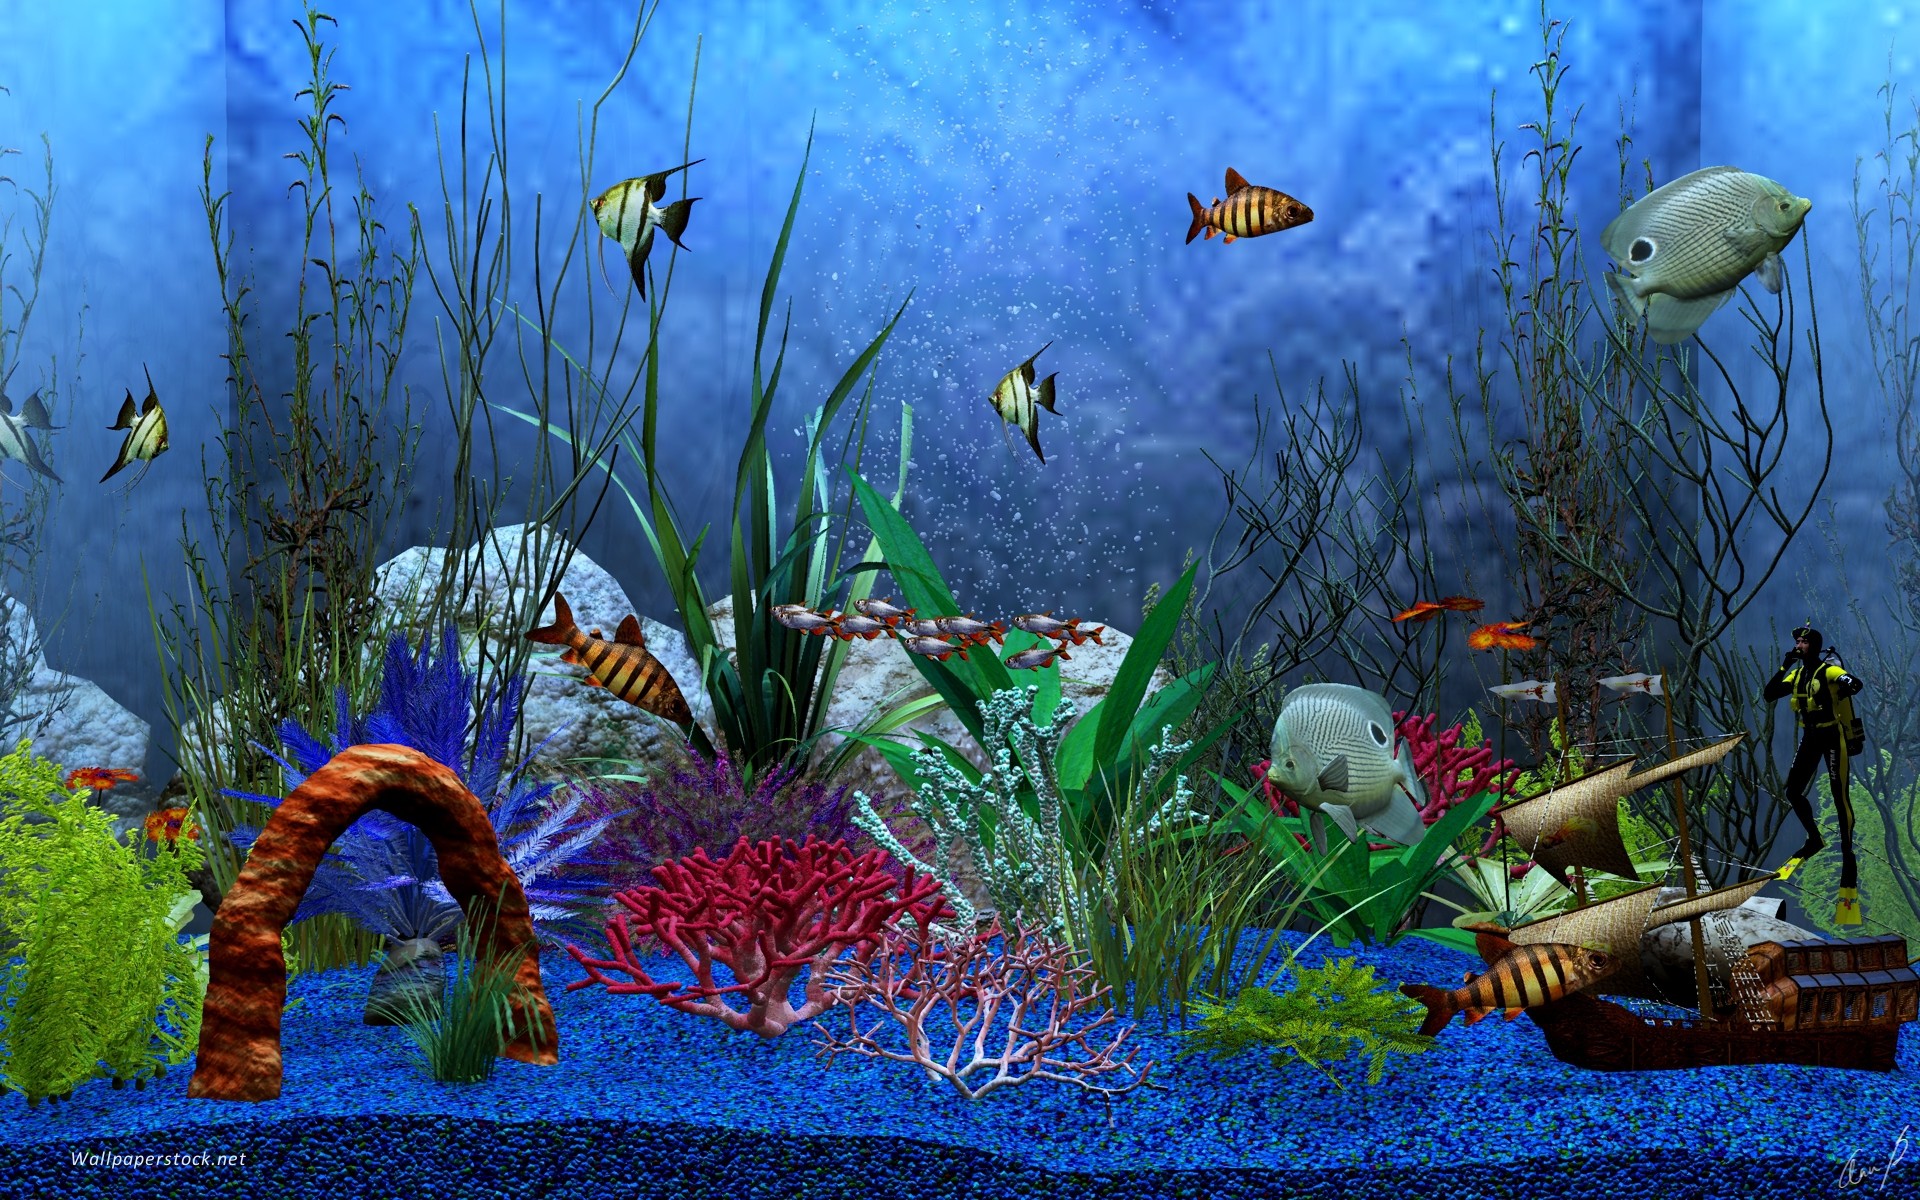 3d Aquarium Wallpaper 52 Images